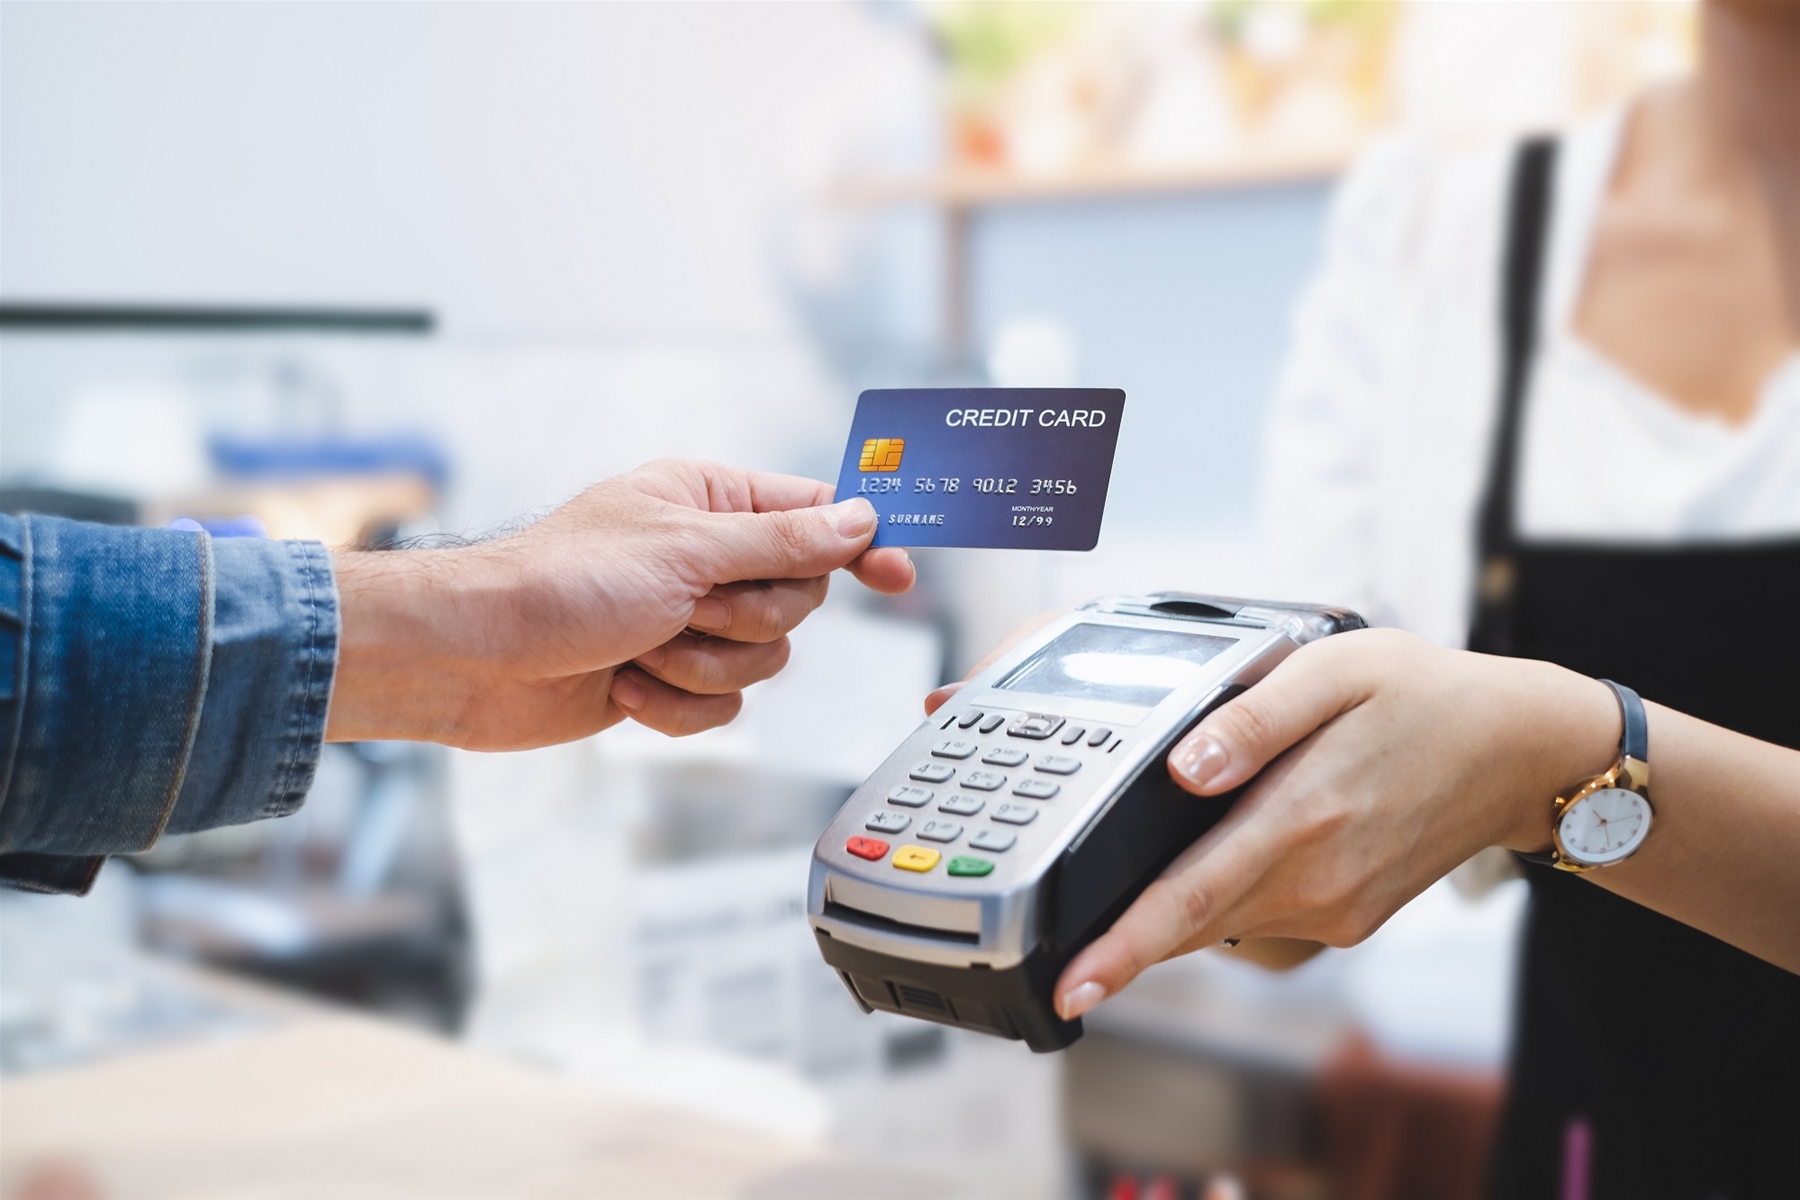 32χρονος έκανε ηλεκτρονικές αγορές με κλεμμένη τραπεζική κάρτα